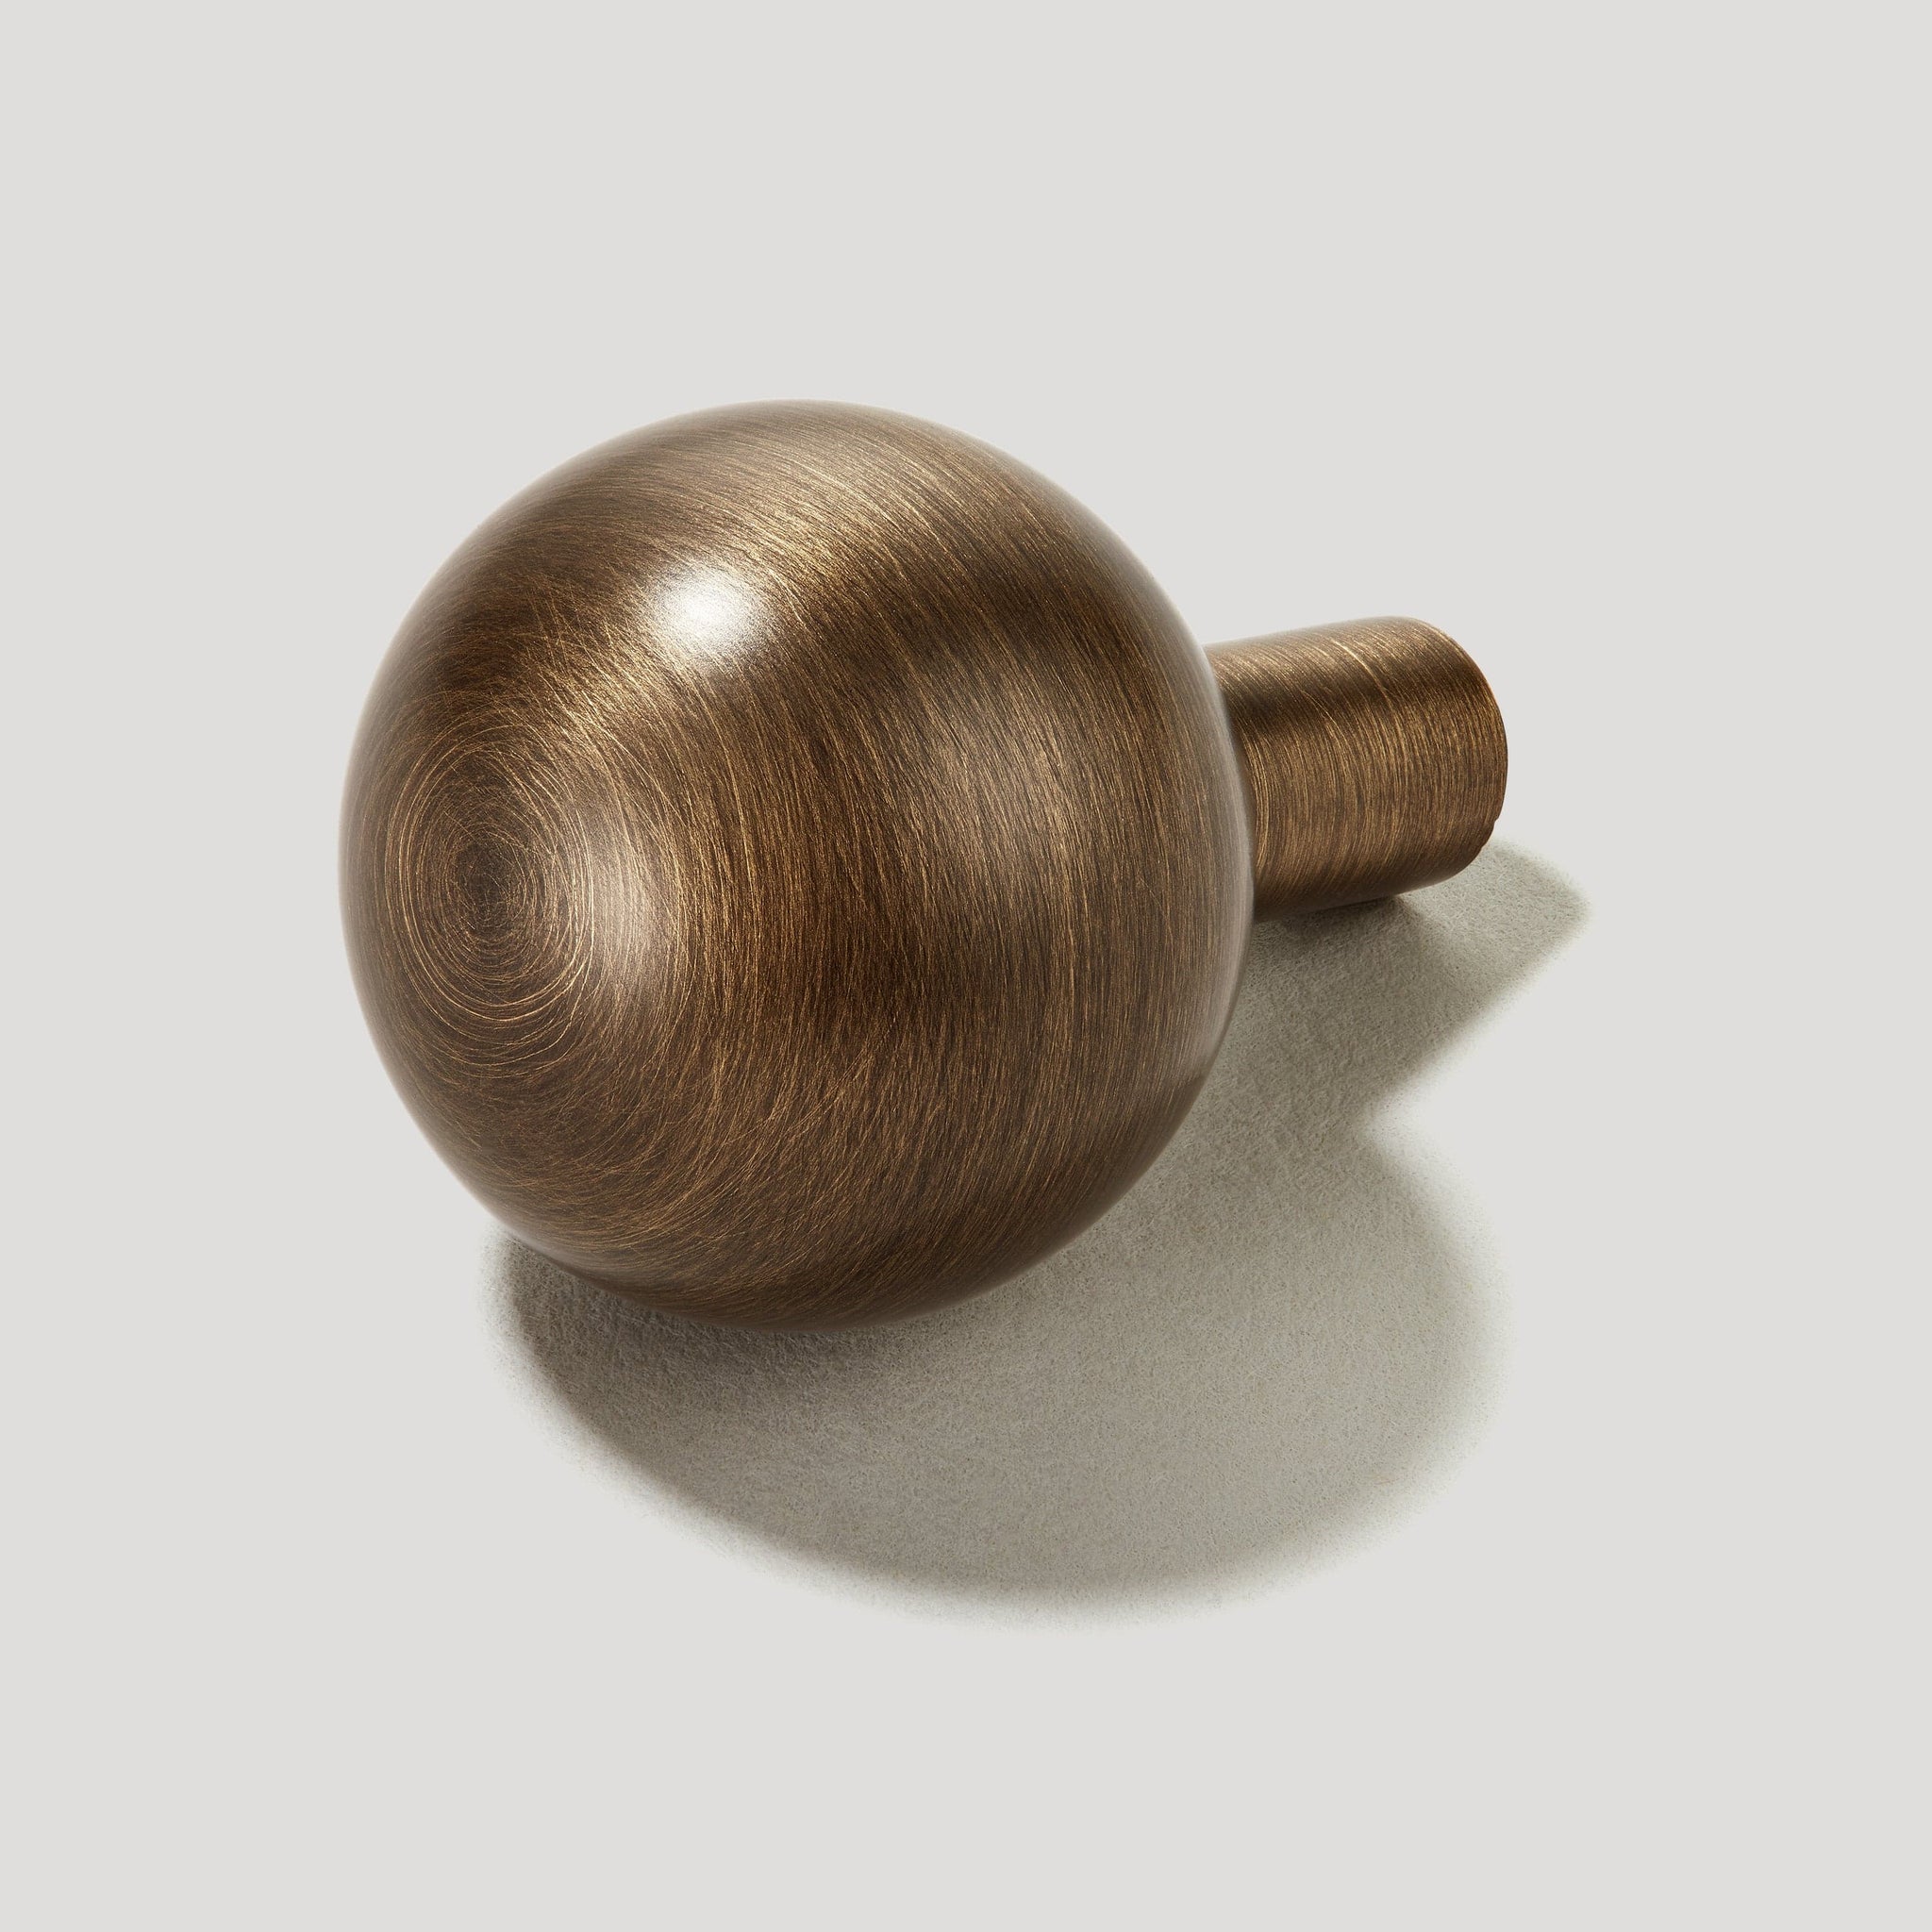 Sphere Cabinet Knob  Round Antique Brass Knobs – Plank Hardware